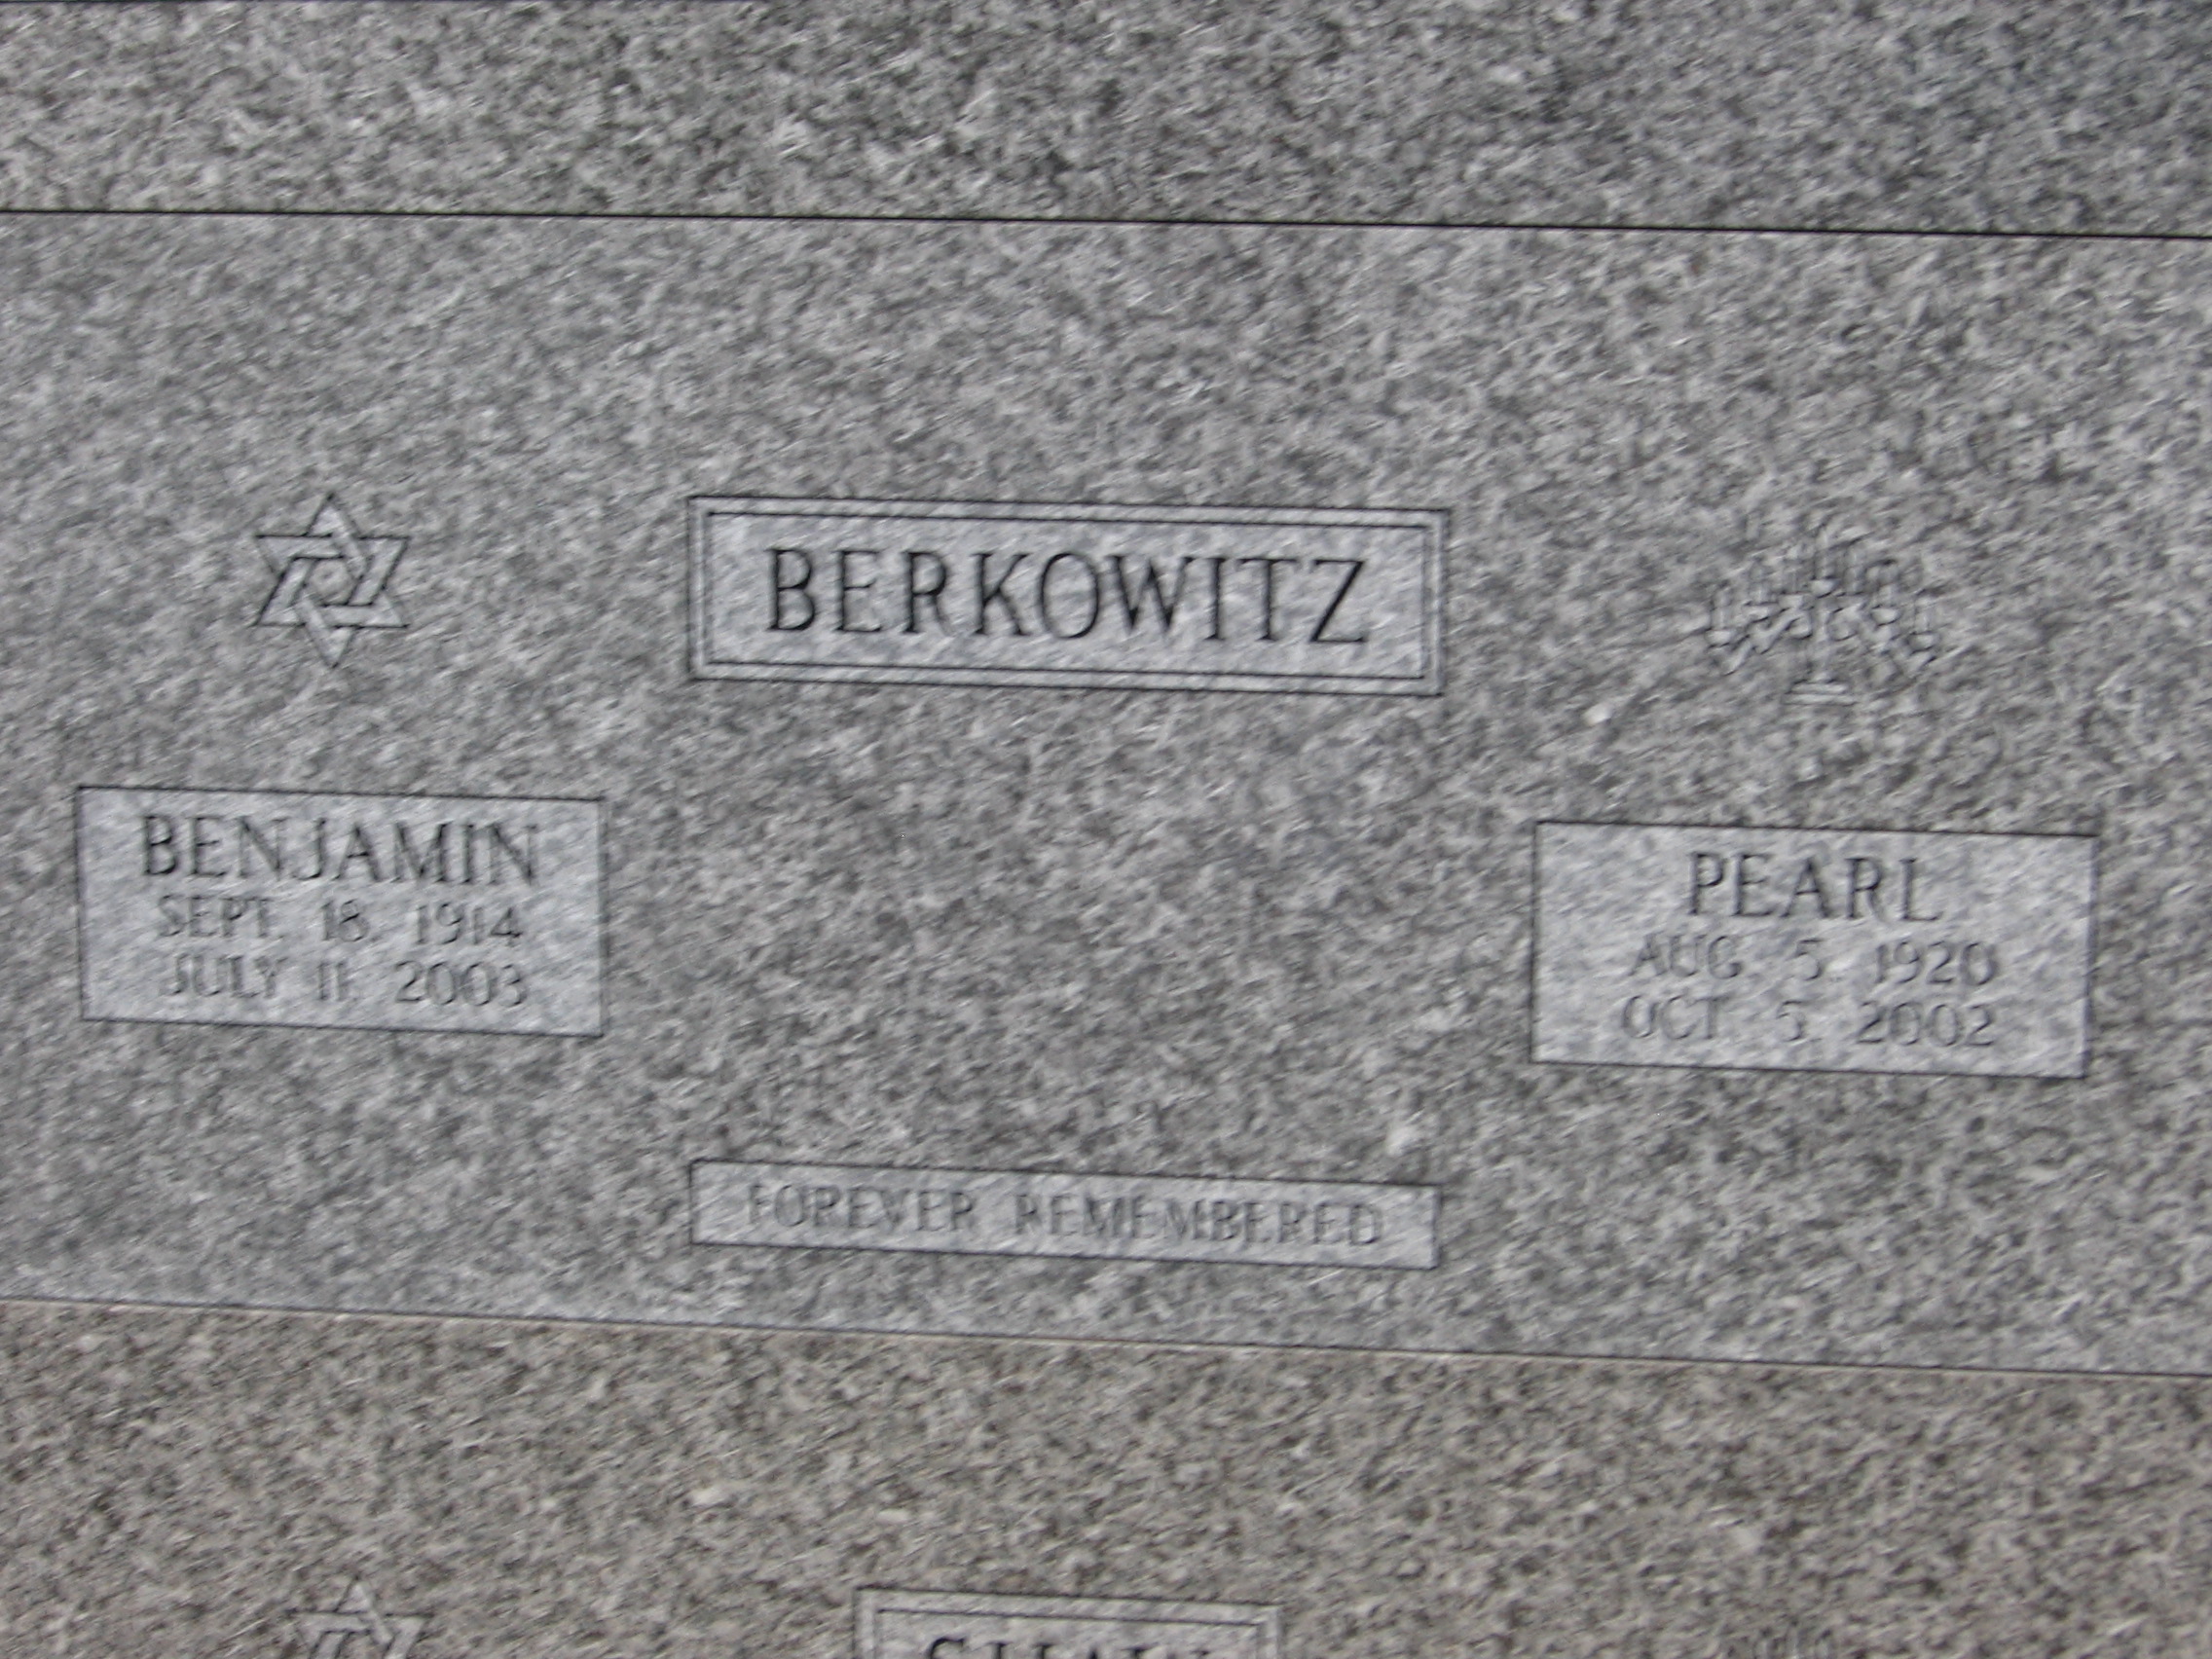 Benjamin Berkowitz